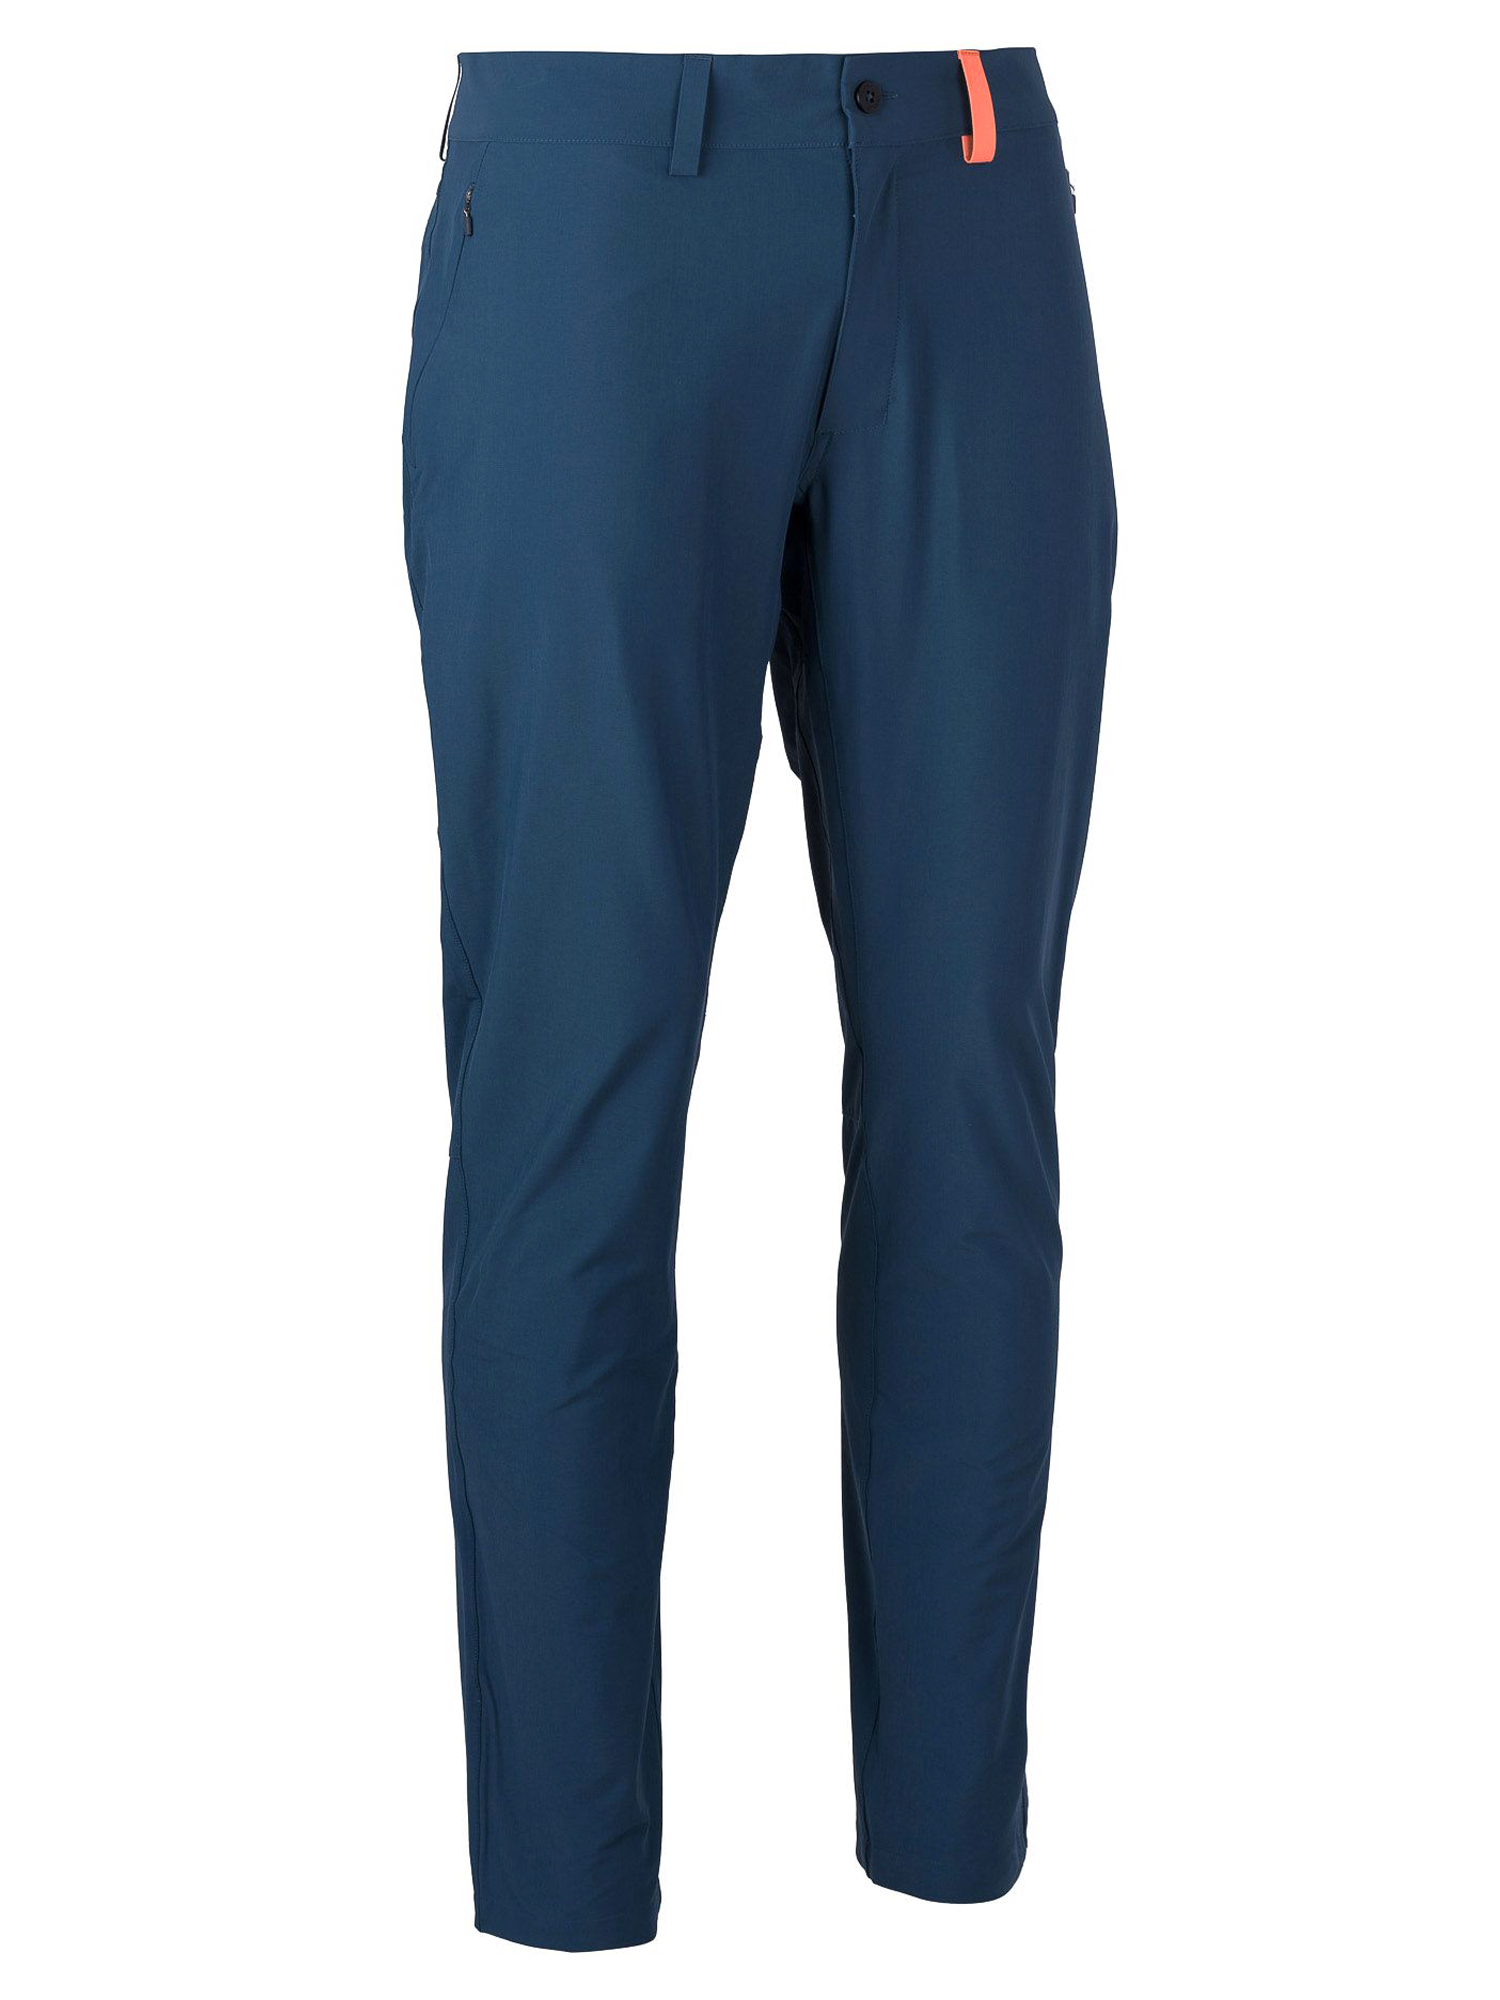 фото Спортивные брюки мужские ternua terra pt m синие m